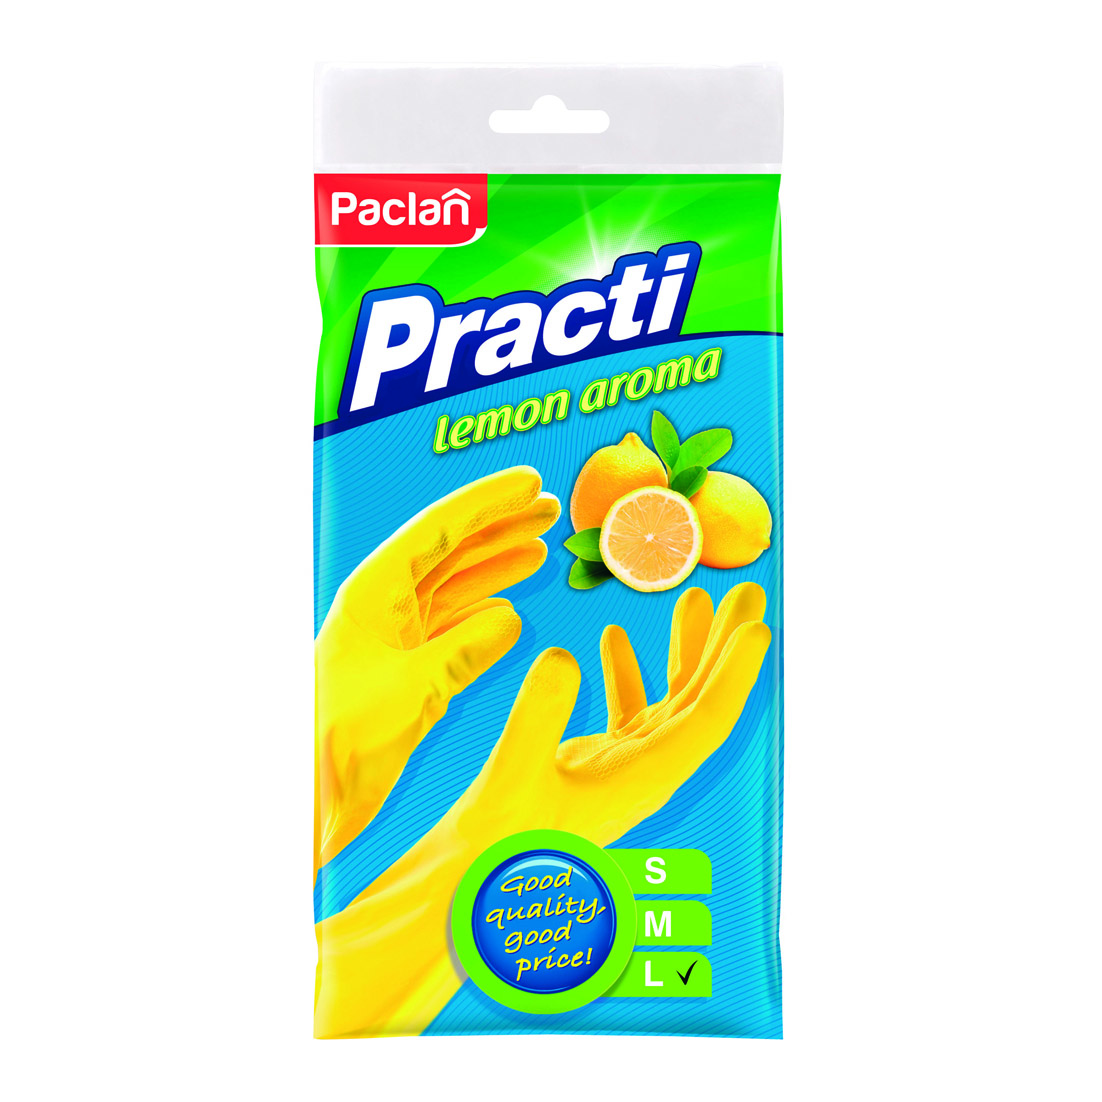 Перчатки резиновые Paclan с ароматом лимона L перчатки хозяйственные lomberta экстра прочные m